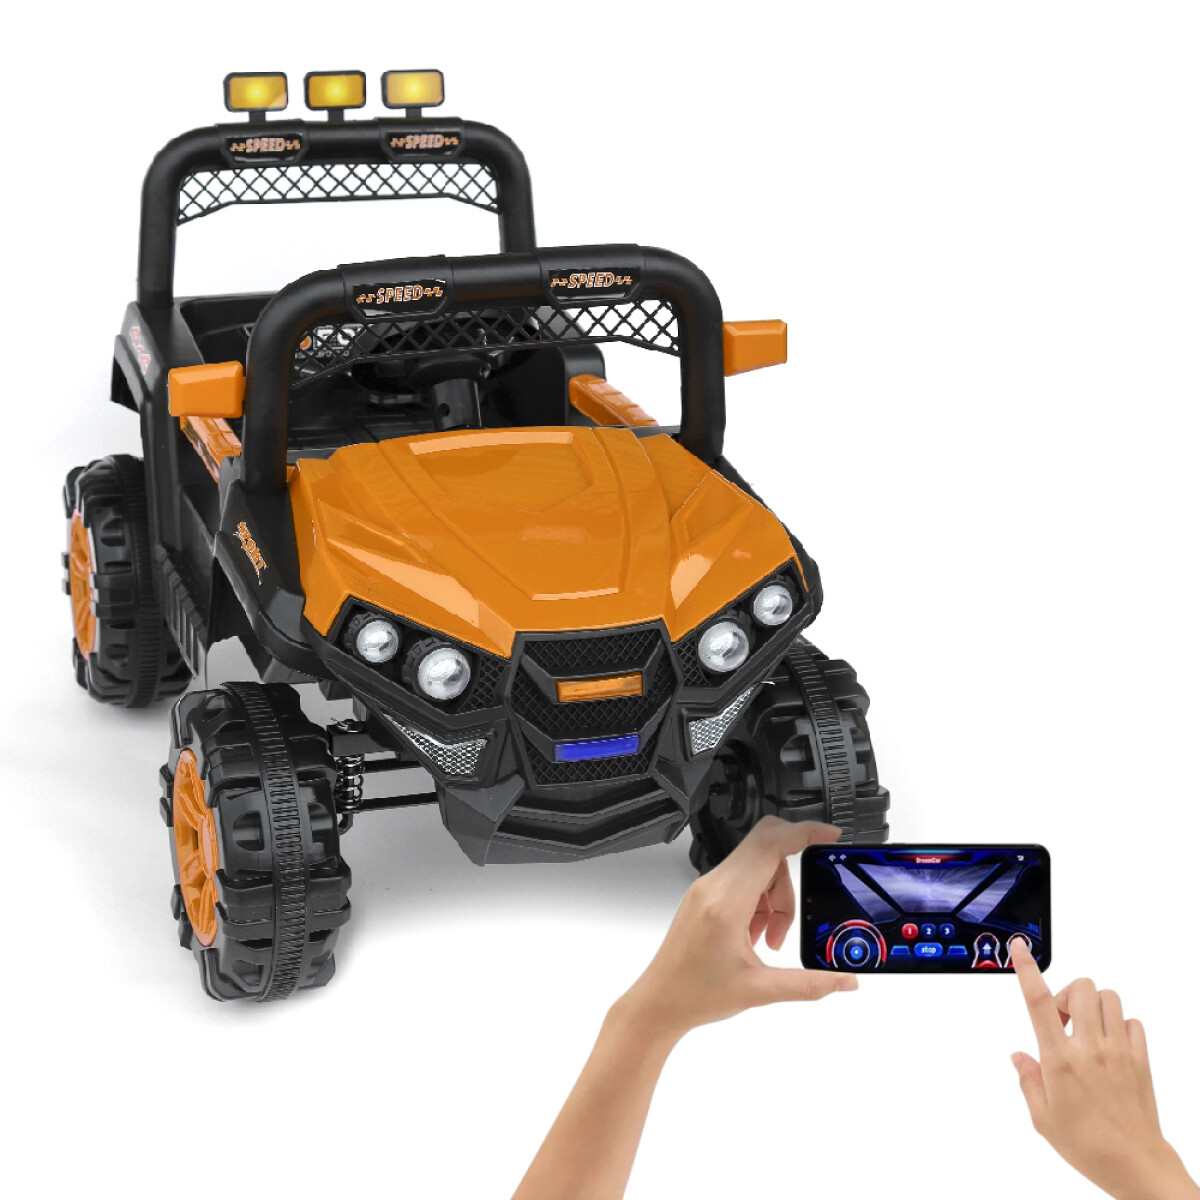 Jeep 4x4 Niños Auto Motor Batería Control Luces USB y Música - Naranja 